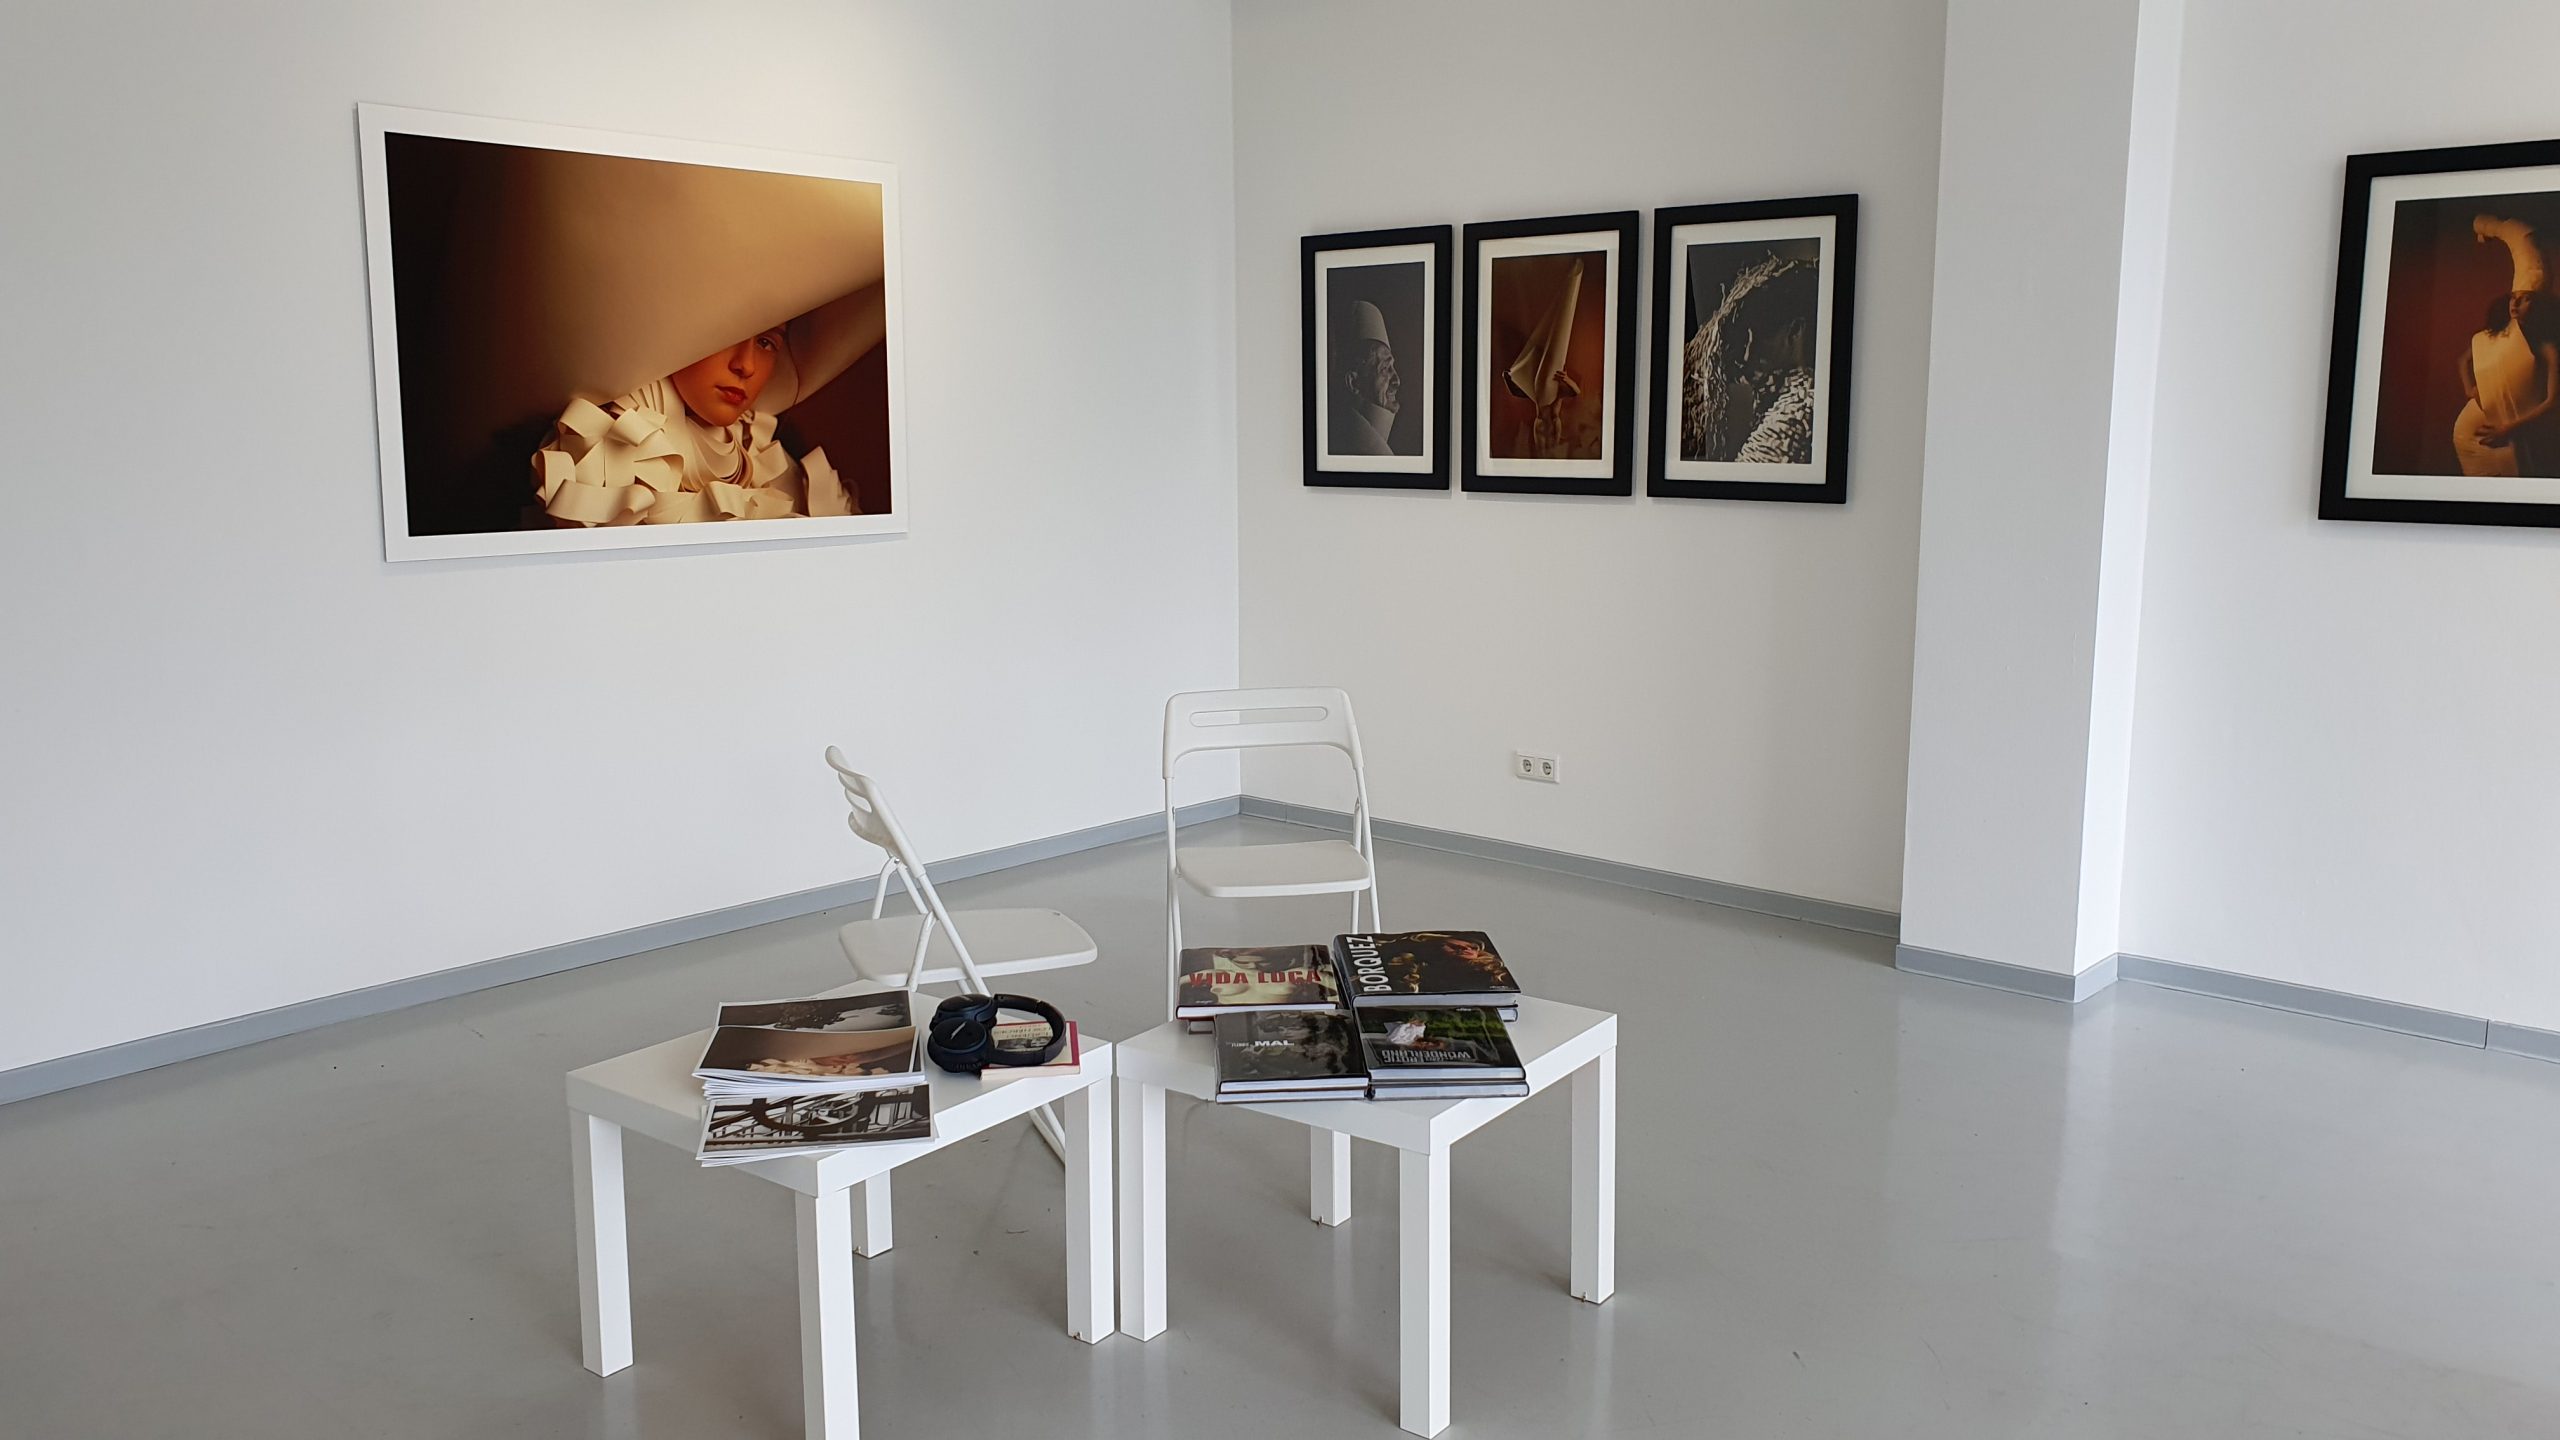 Wand mit verschiedenen Fotografien in einem Raum mit zwei kleinen Tischen und Stühlen.